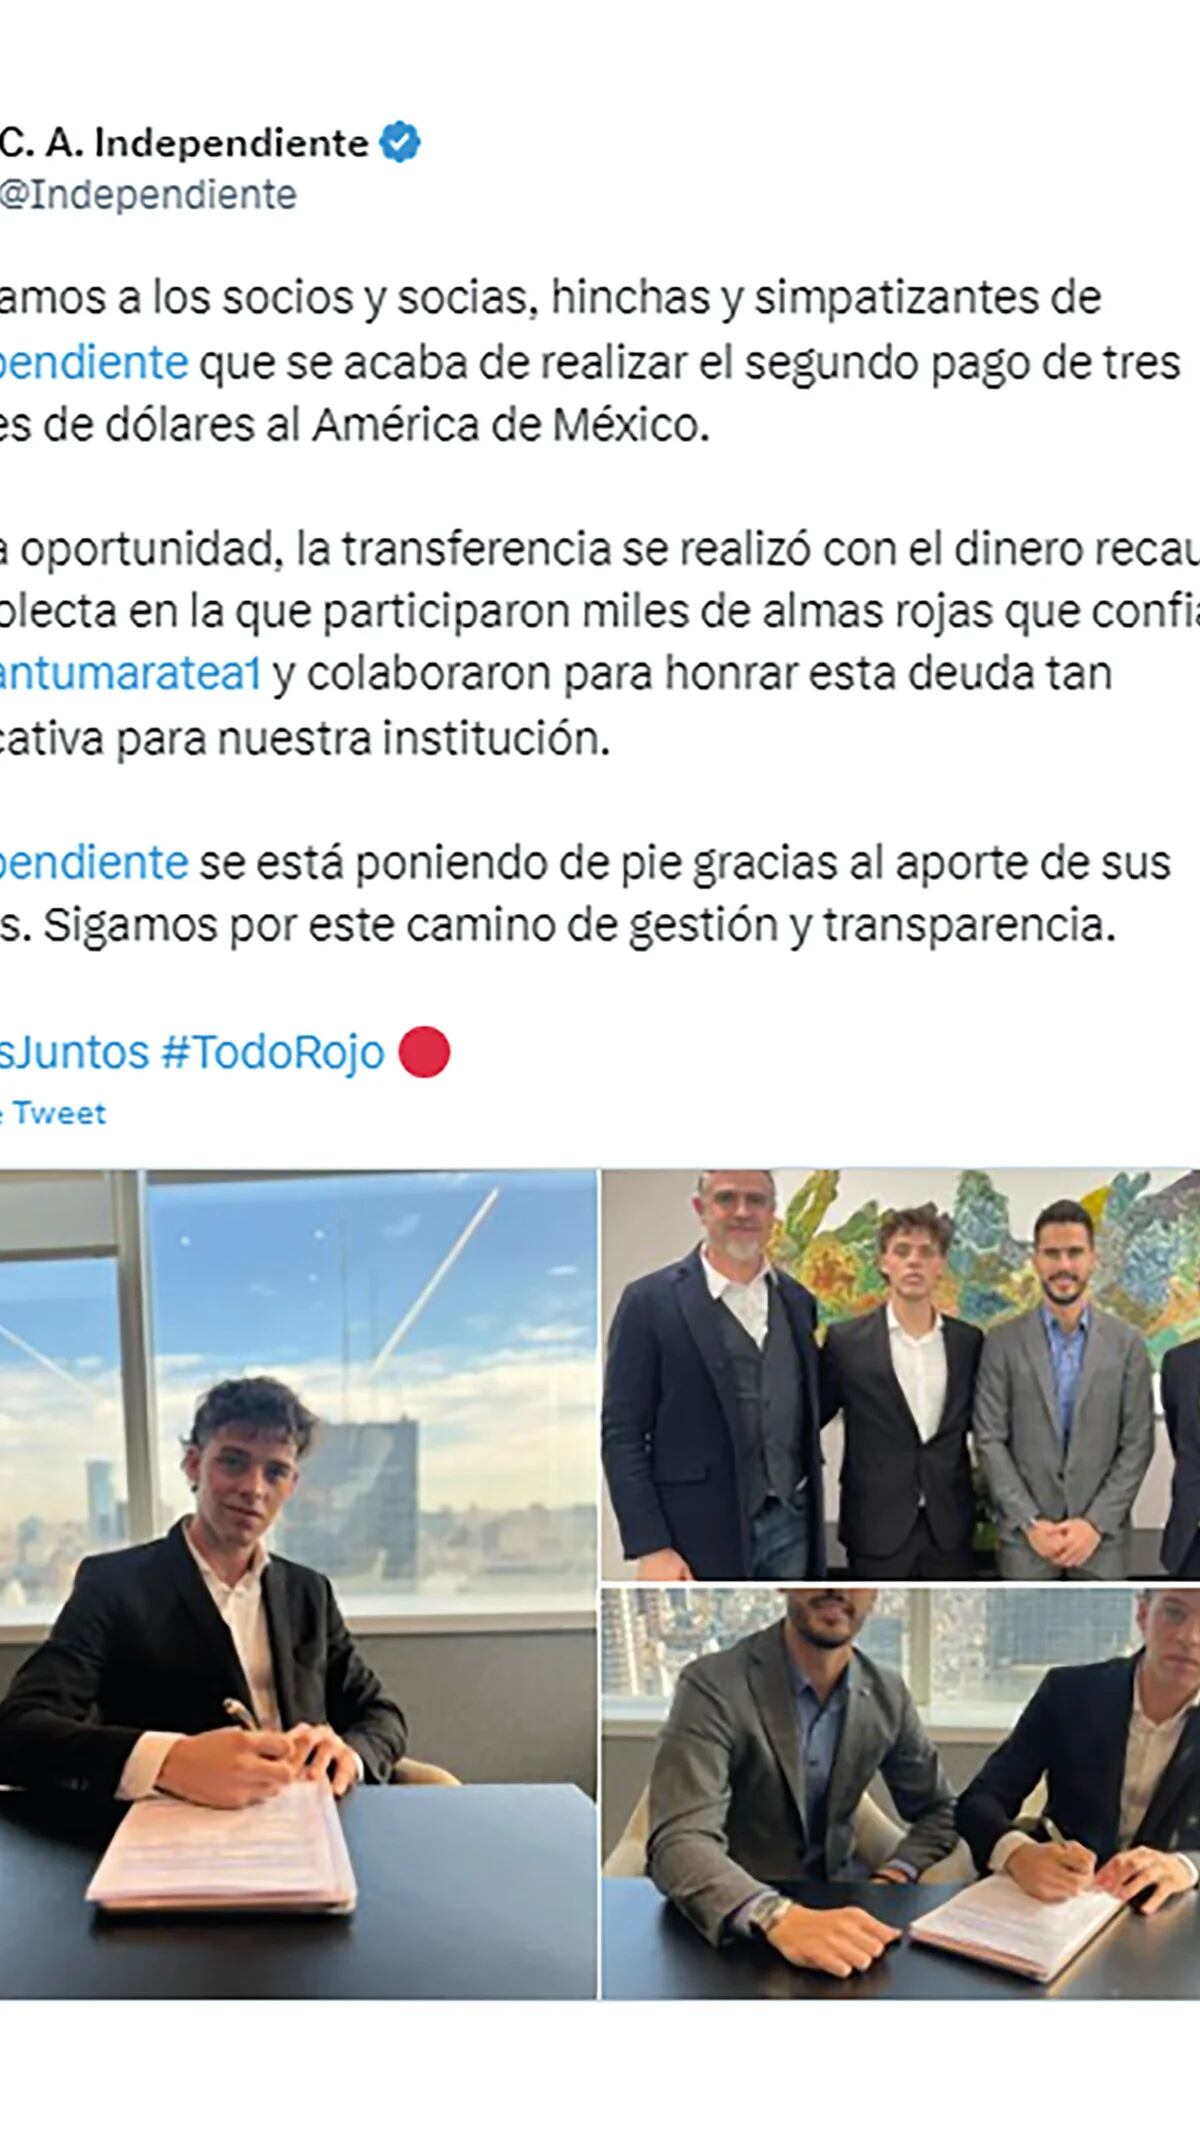 La REVELACIÓN de Santiago Maratea sobre la deuda de Independiente con el  América de México - TyC Sports